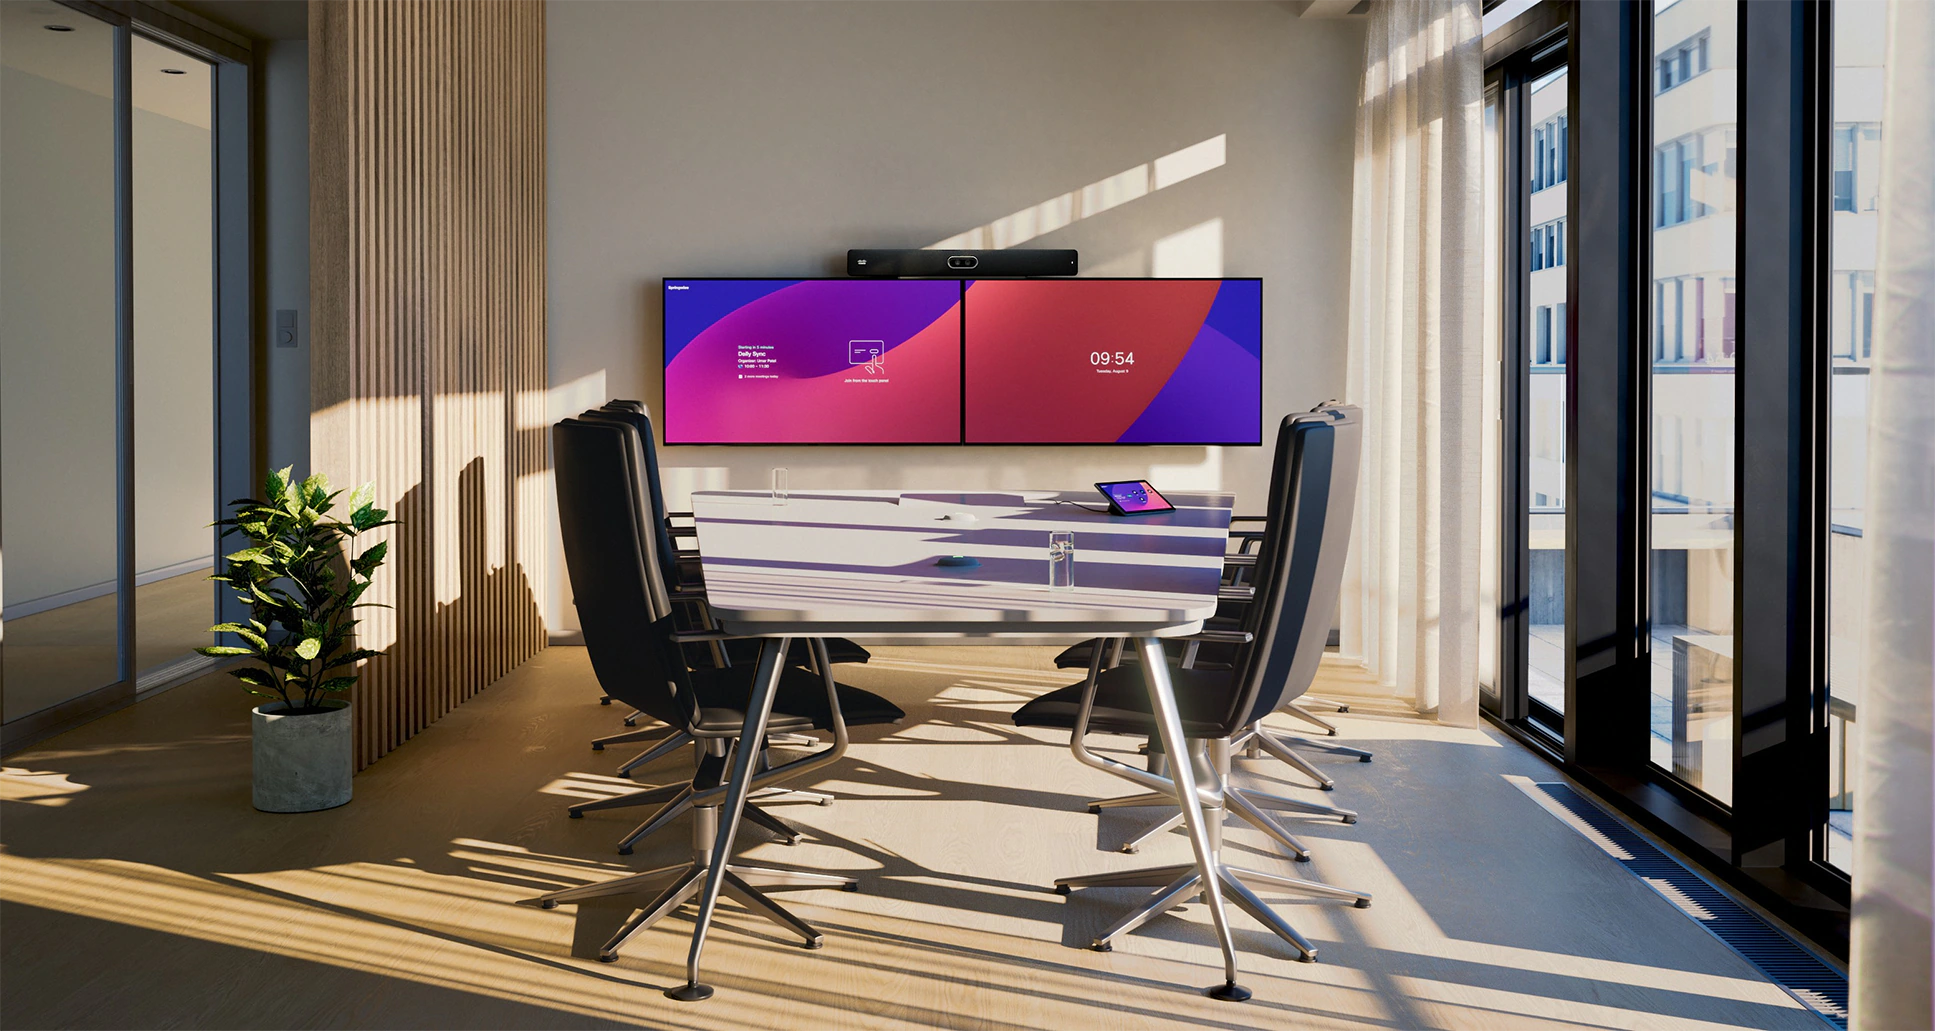 Cisco Room Bar Pro với màn hình phẳng kép dành cho hội nghị truyền hình trong phòng họp cỡ trung bình